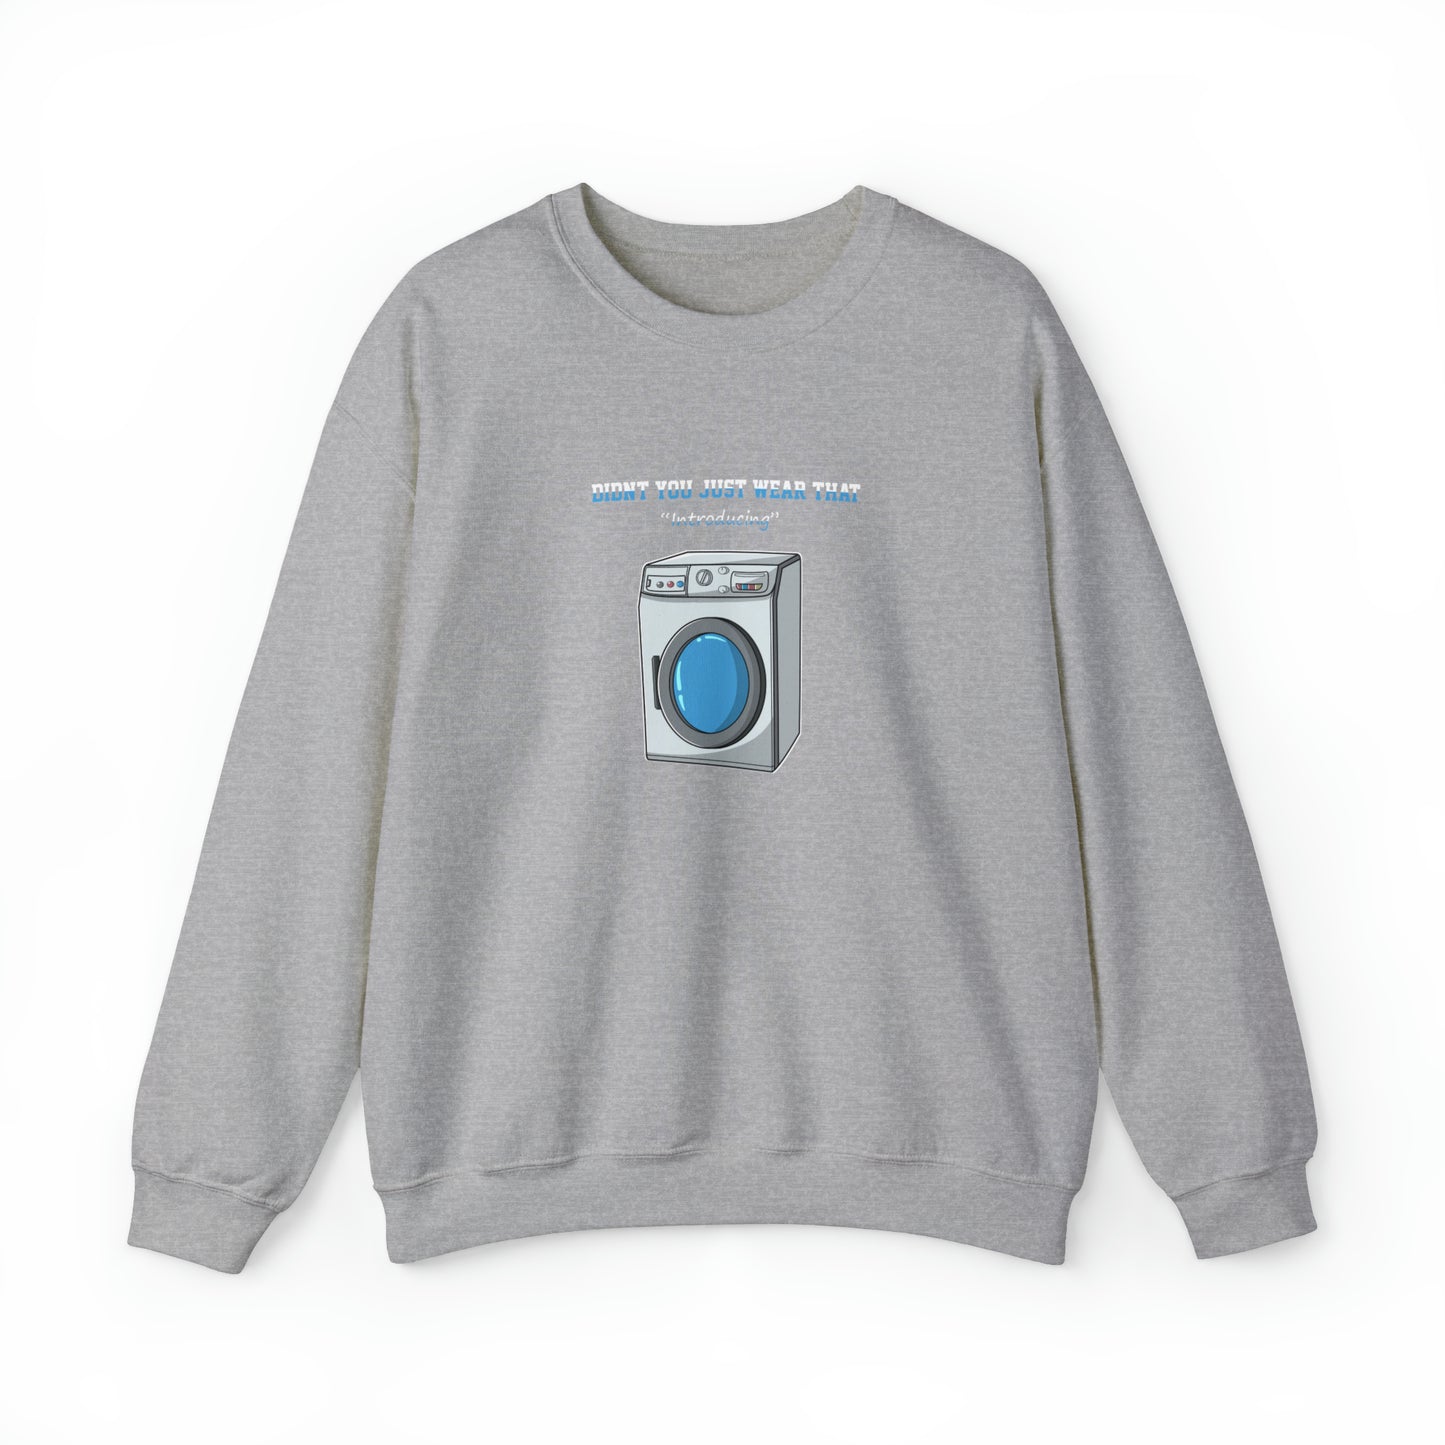 Custom Parody Crewneck Sweatshirt, Washing machine Design